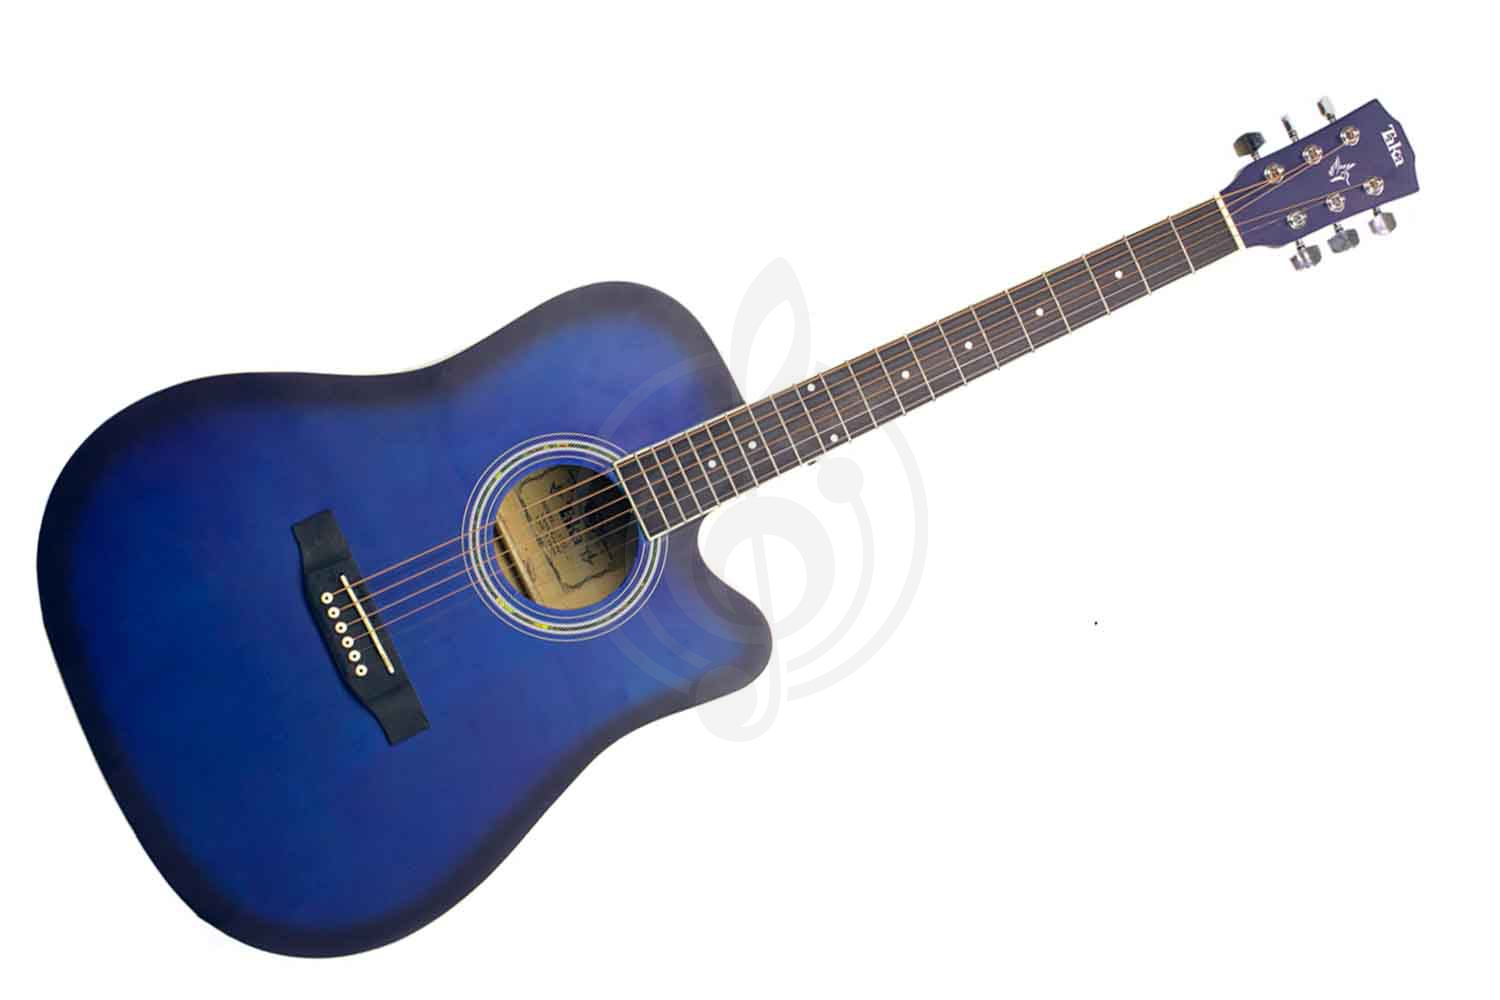 Акустическая гитара Акустические гитары TAKA TAKA 41ACBL - акустическая гитара 41ACBL - фото 1